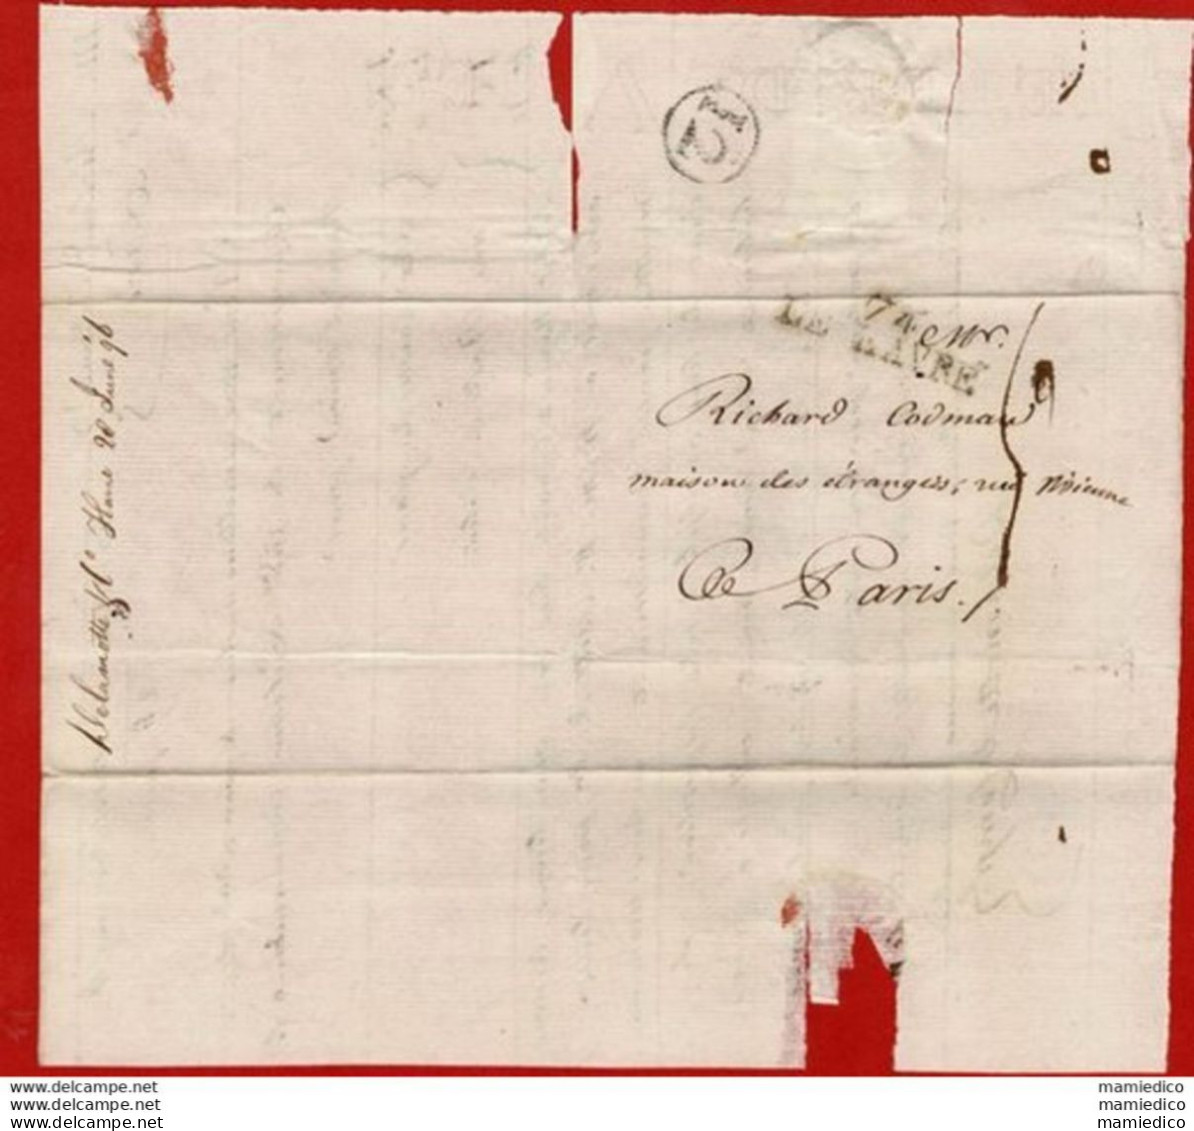 - 20 Juin, 22 Nov, Et 12 Déc.1796 - 3 Envel-Lettres Expédiées Du Havre Vers Paris Au Sujet De Commandes .... - Unclassified